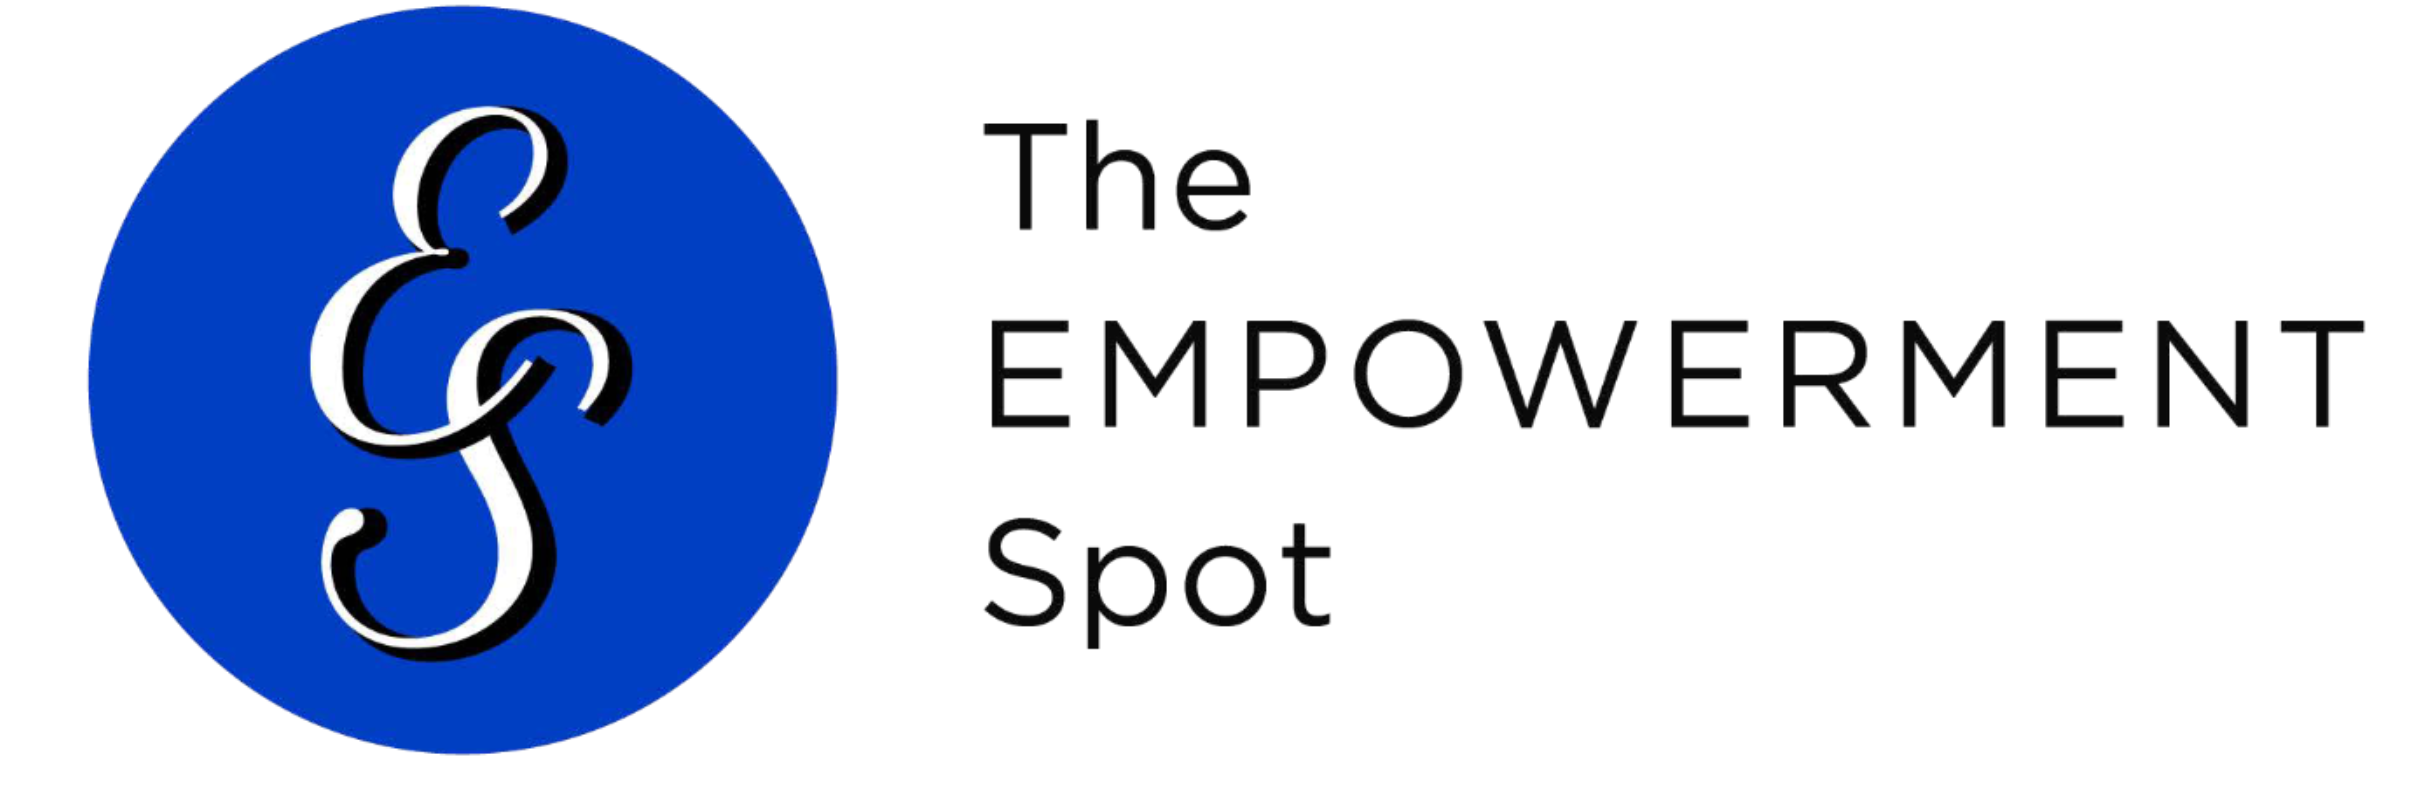 The Empowerment Spot